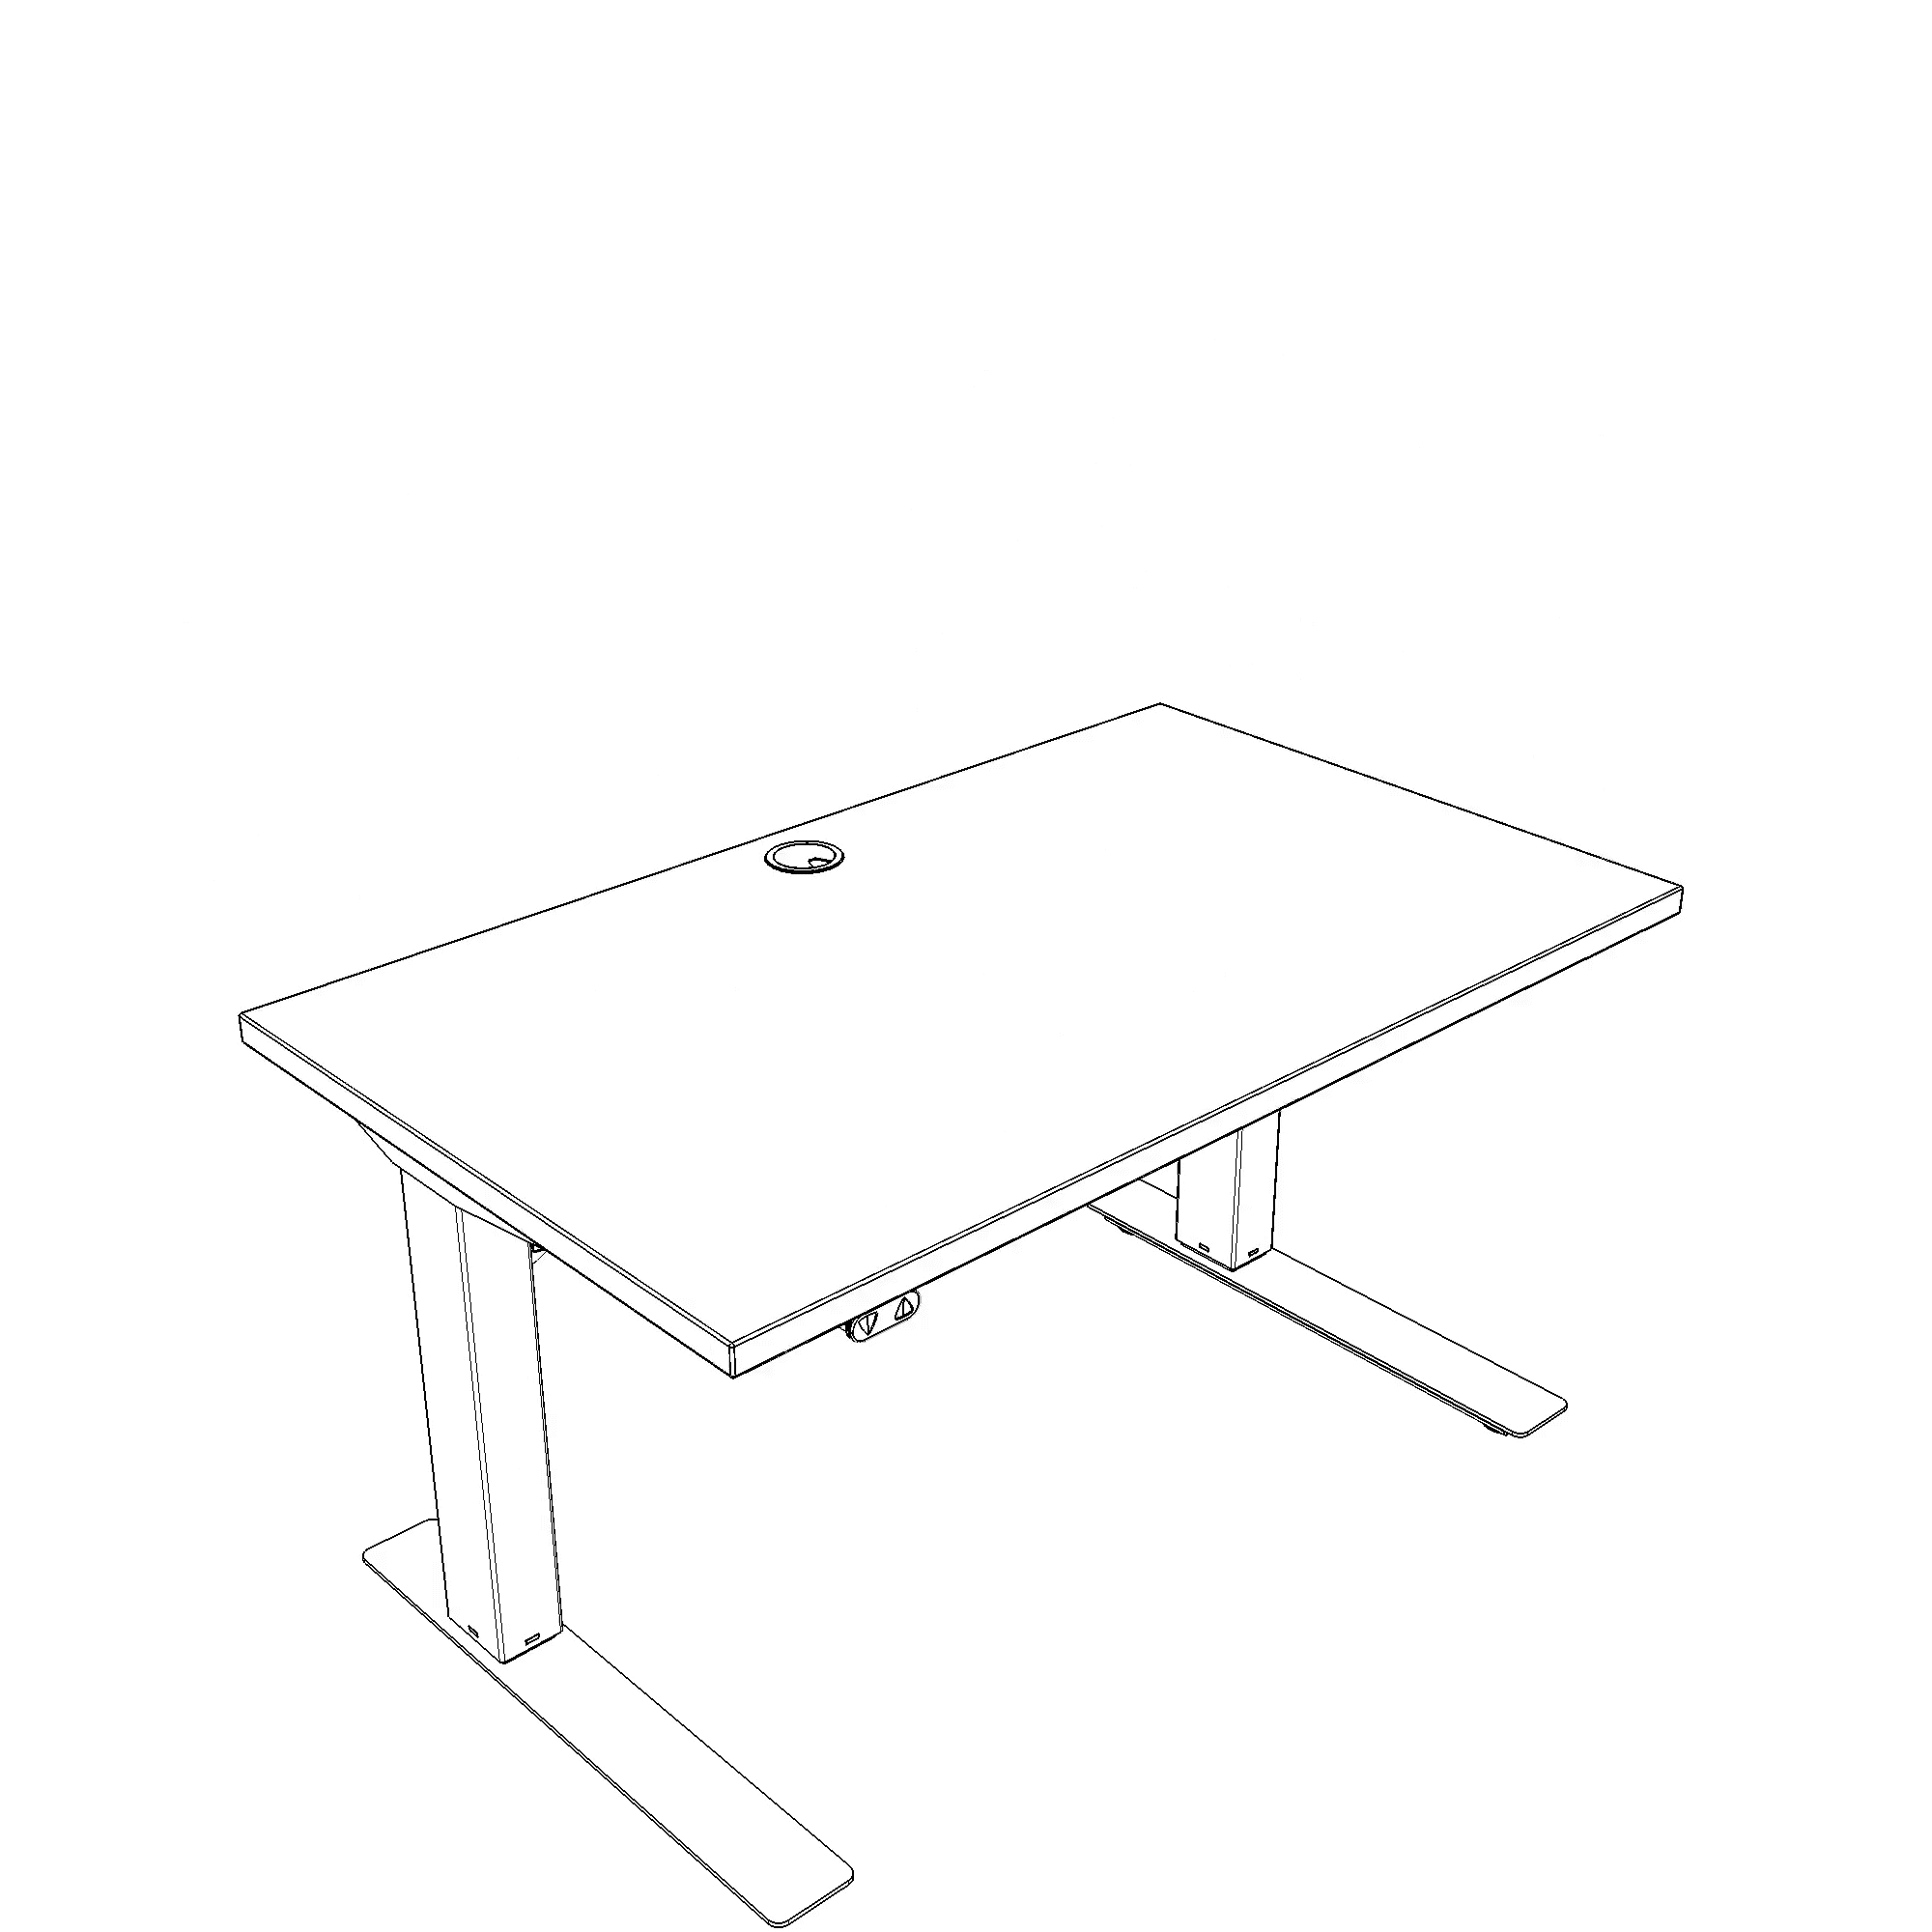 Schreibtisch steh/sitz | 100x60 cm | Weiß mit silbernem Gestell